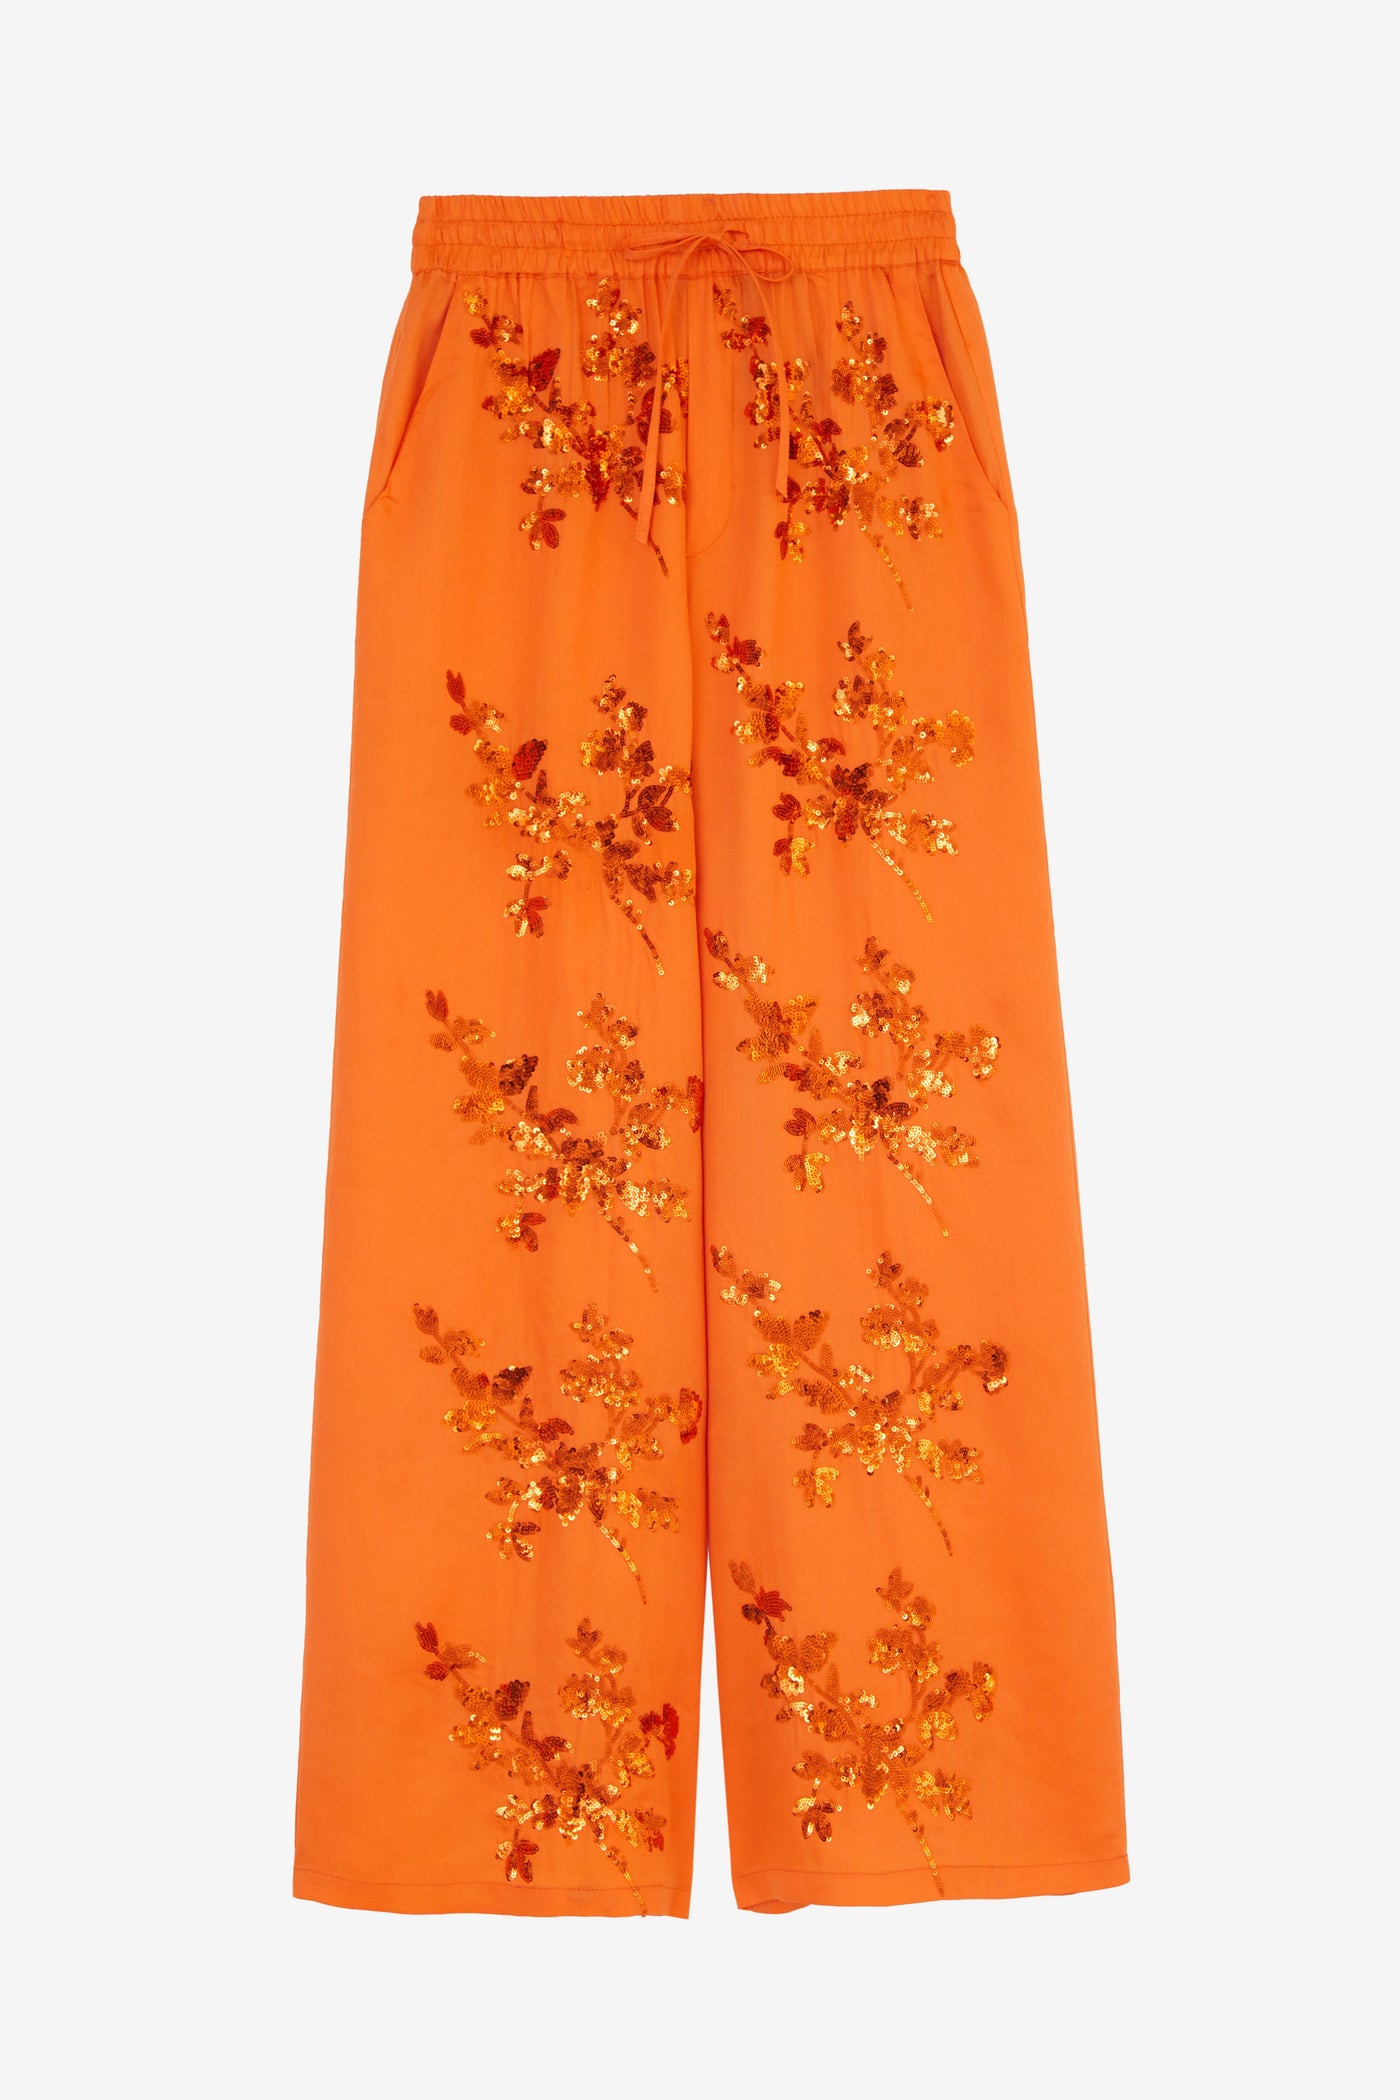 Pantalón Samara naranja